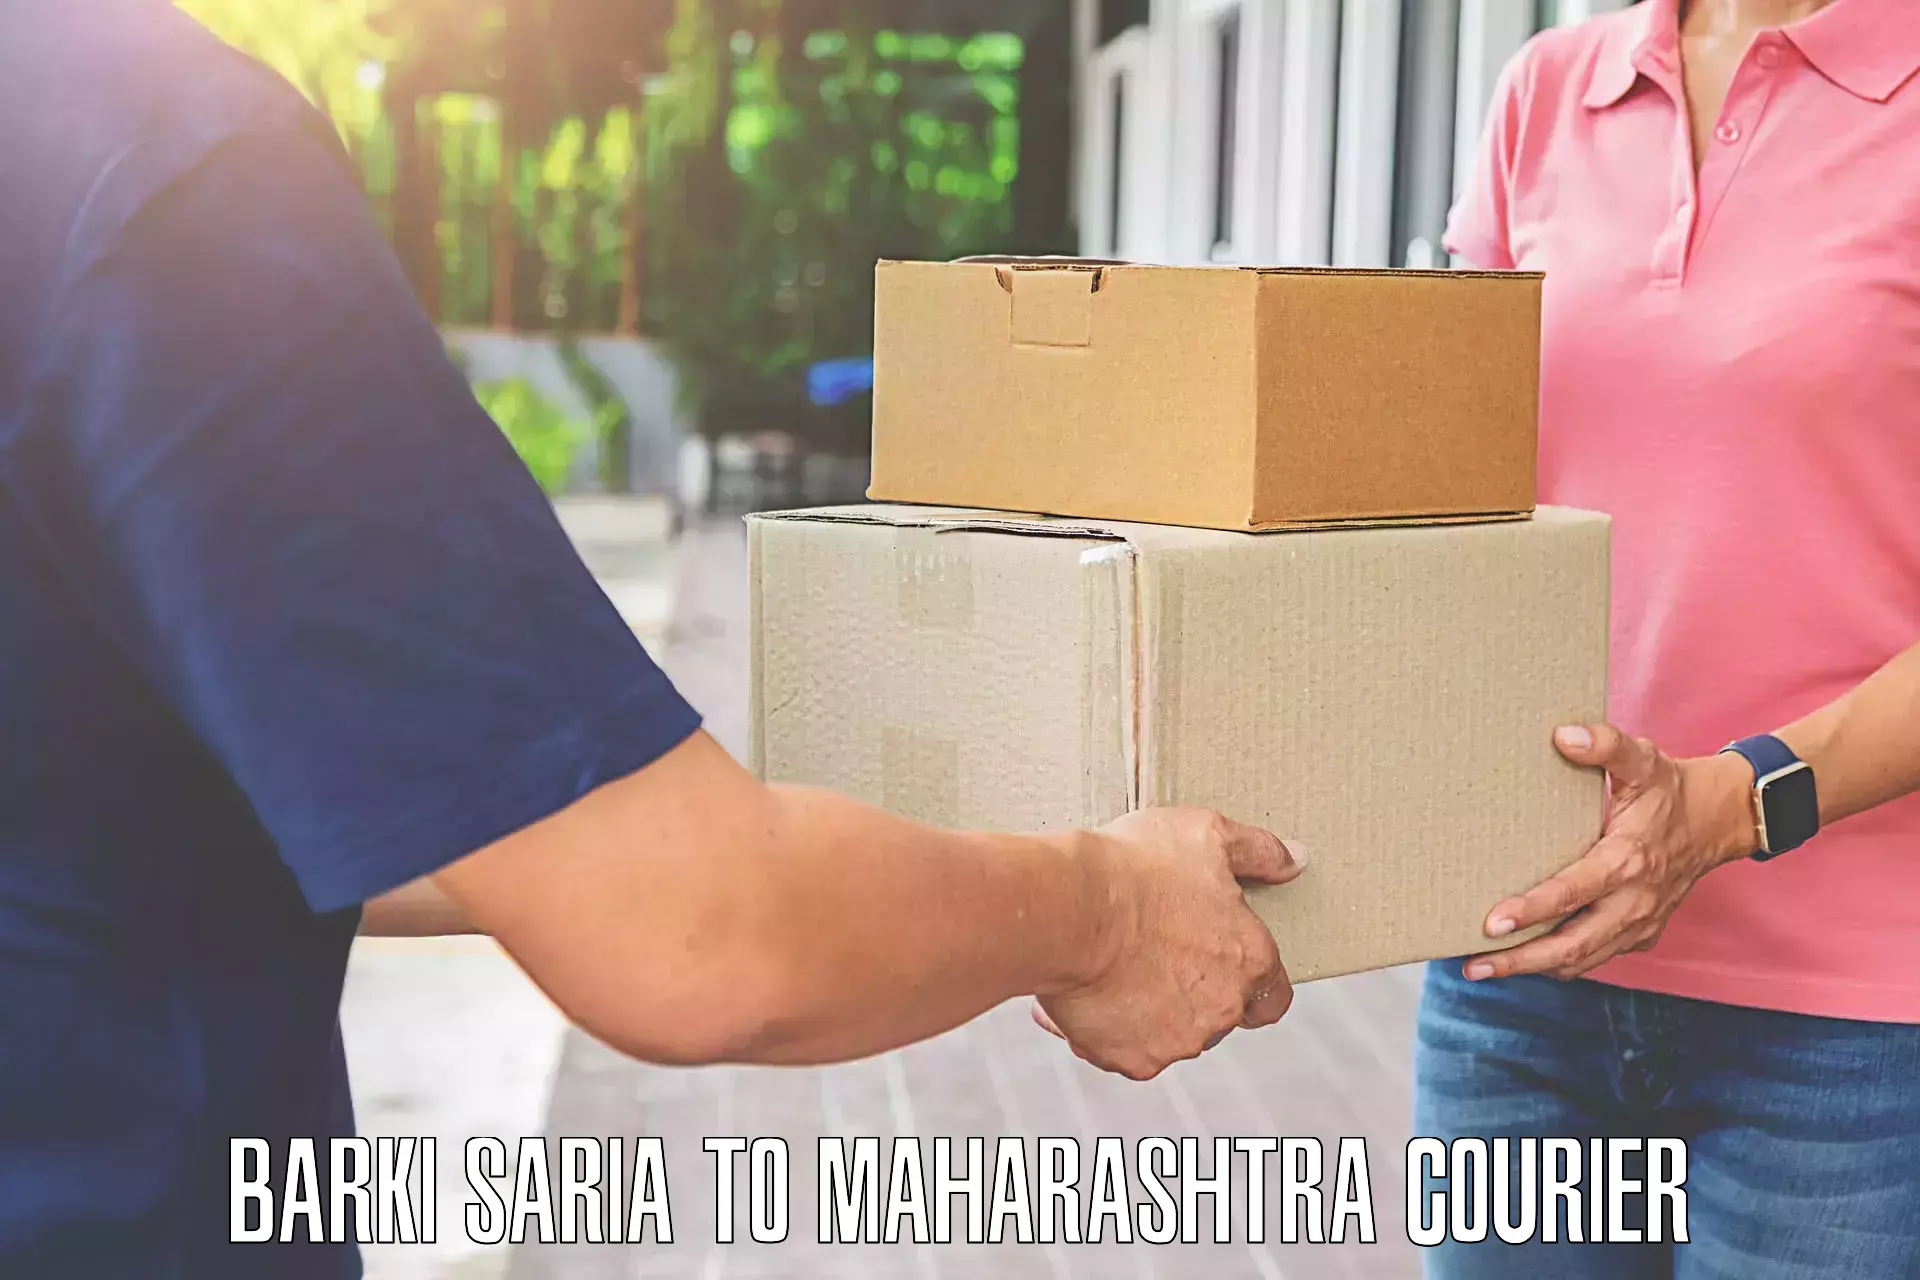 Baggage shipping quotes Barki Saria to Maharashtra